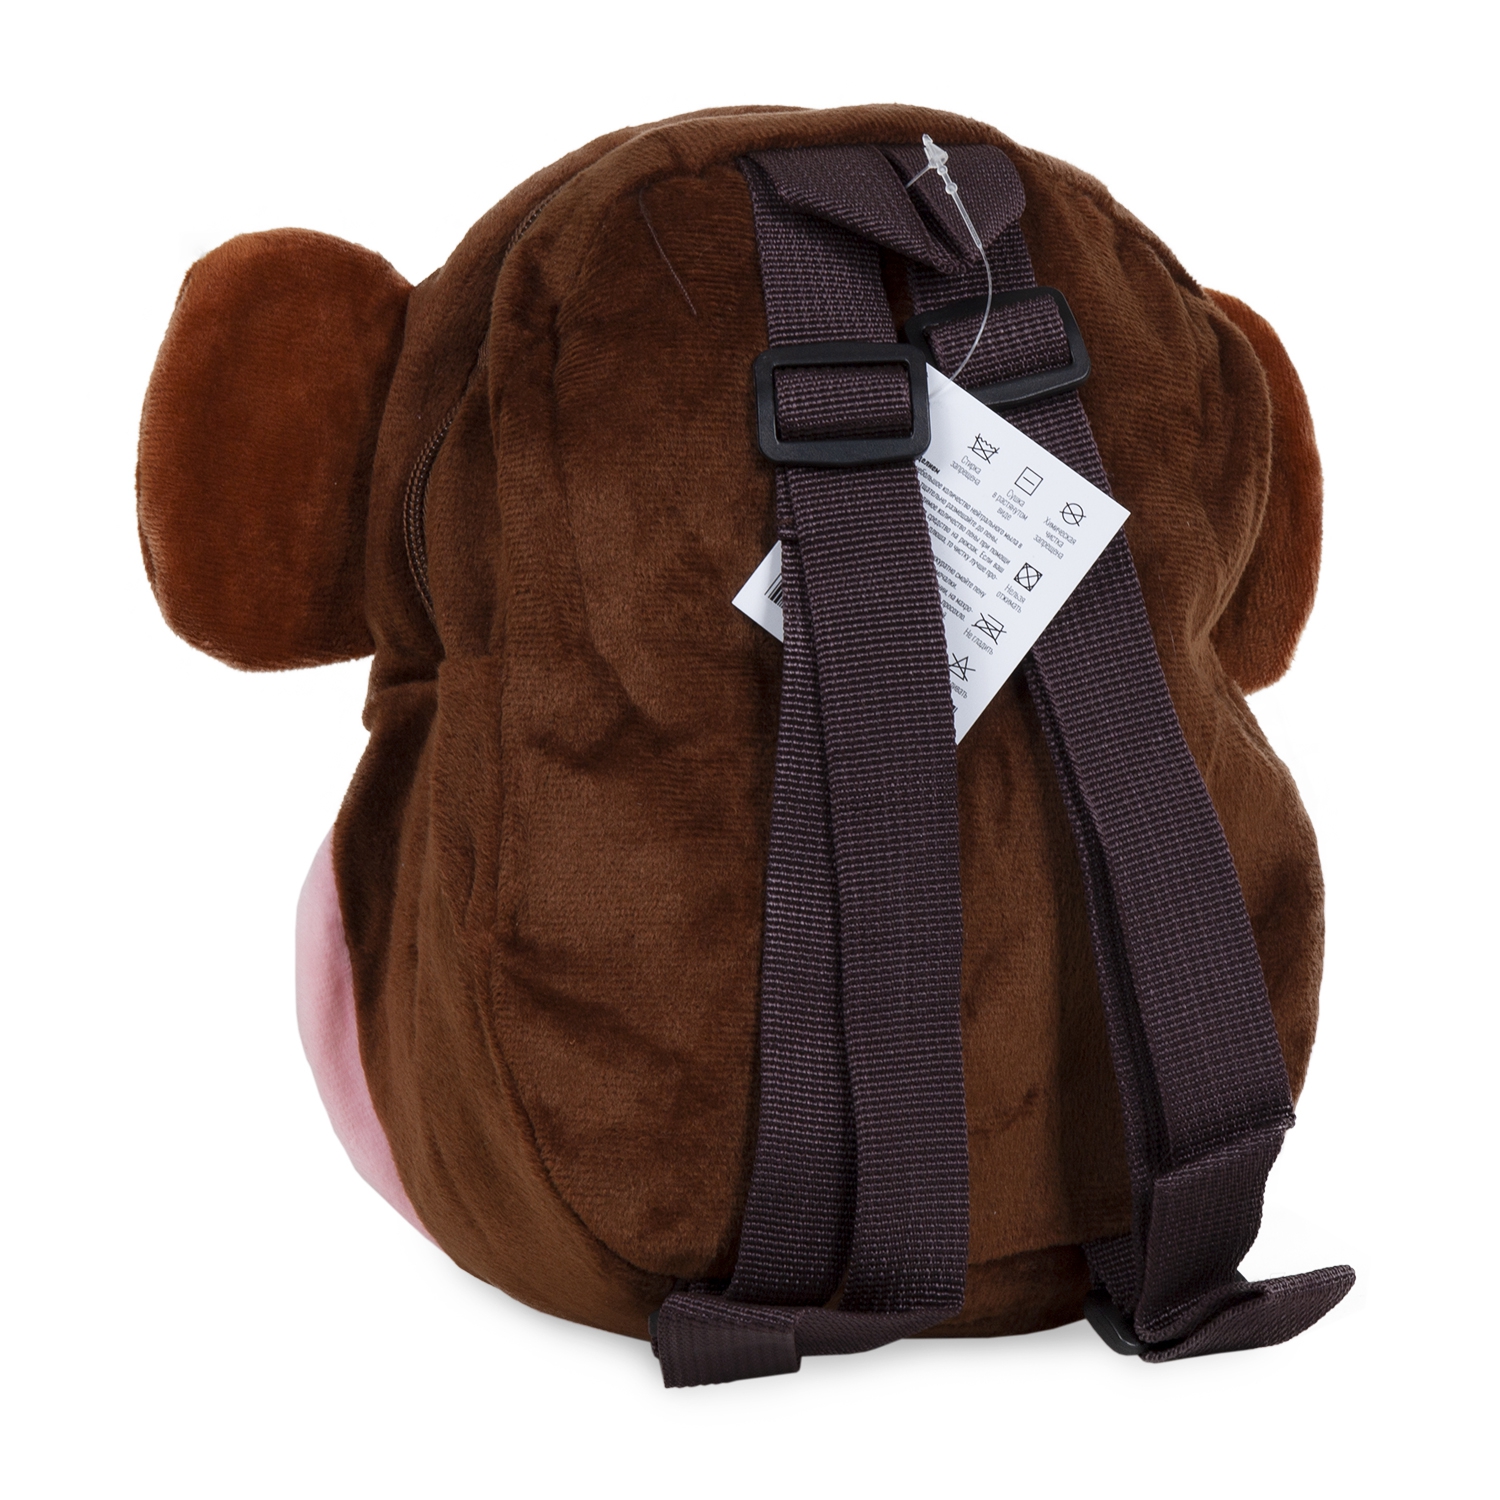 Рюкзак детский Плюшевая обезьянка  коричнево-розовый 19*8*23 см